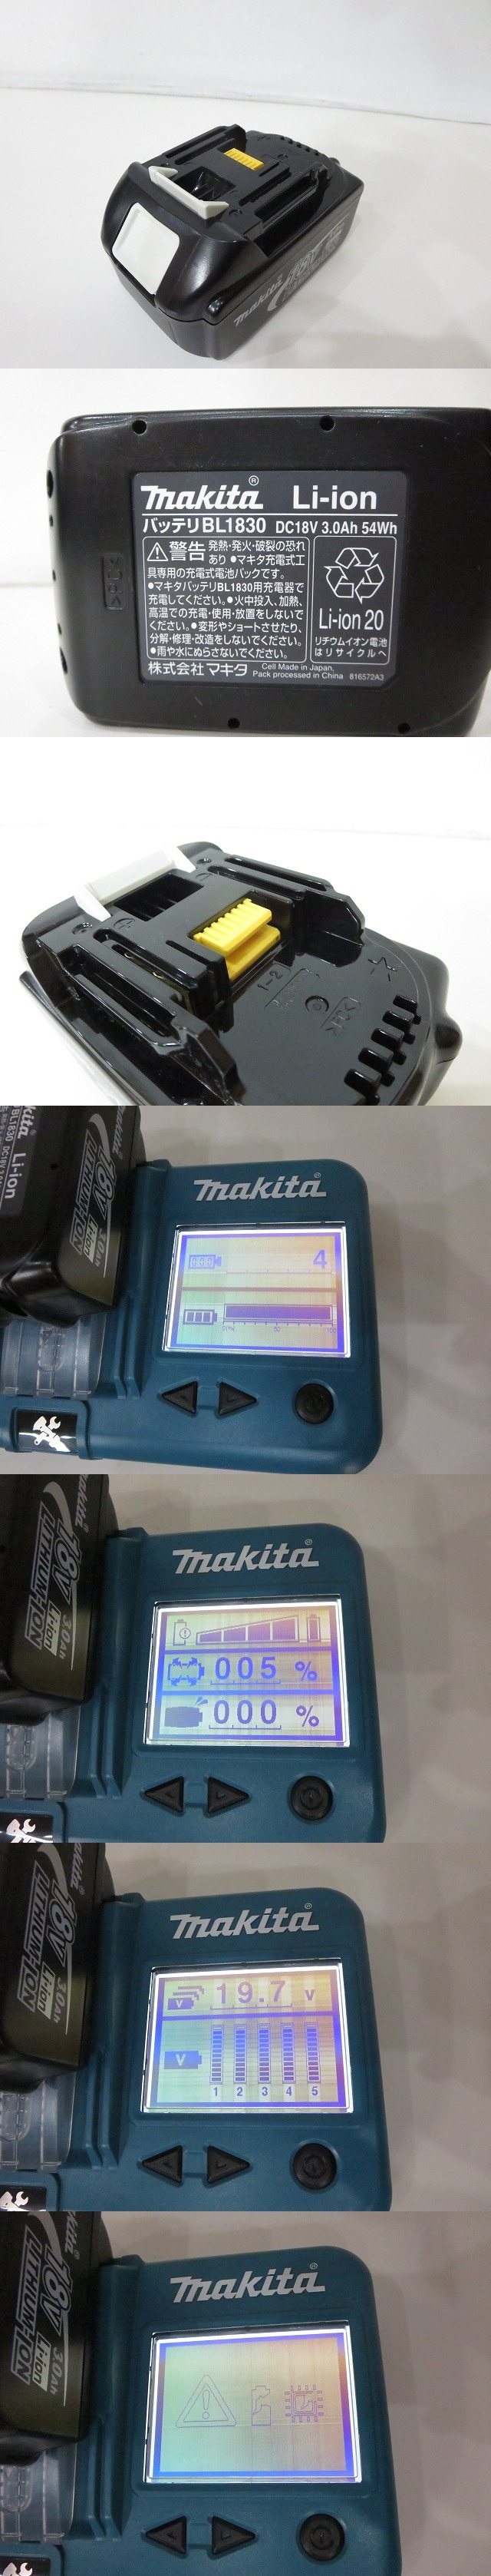 特価新品makita [マキタ] 100mm充電式ディスクグラインダ [GA402DRF] 18V 3.0Ah 2013年 電動工具 ※充電4回 バッテリー劣化有/ジャンク品扱い 4362 ディスクグラインダー